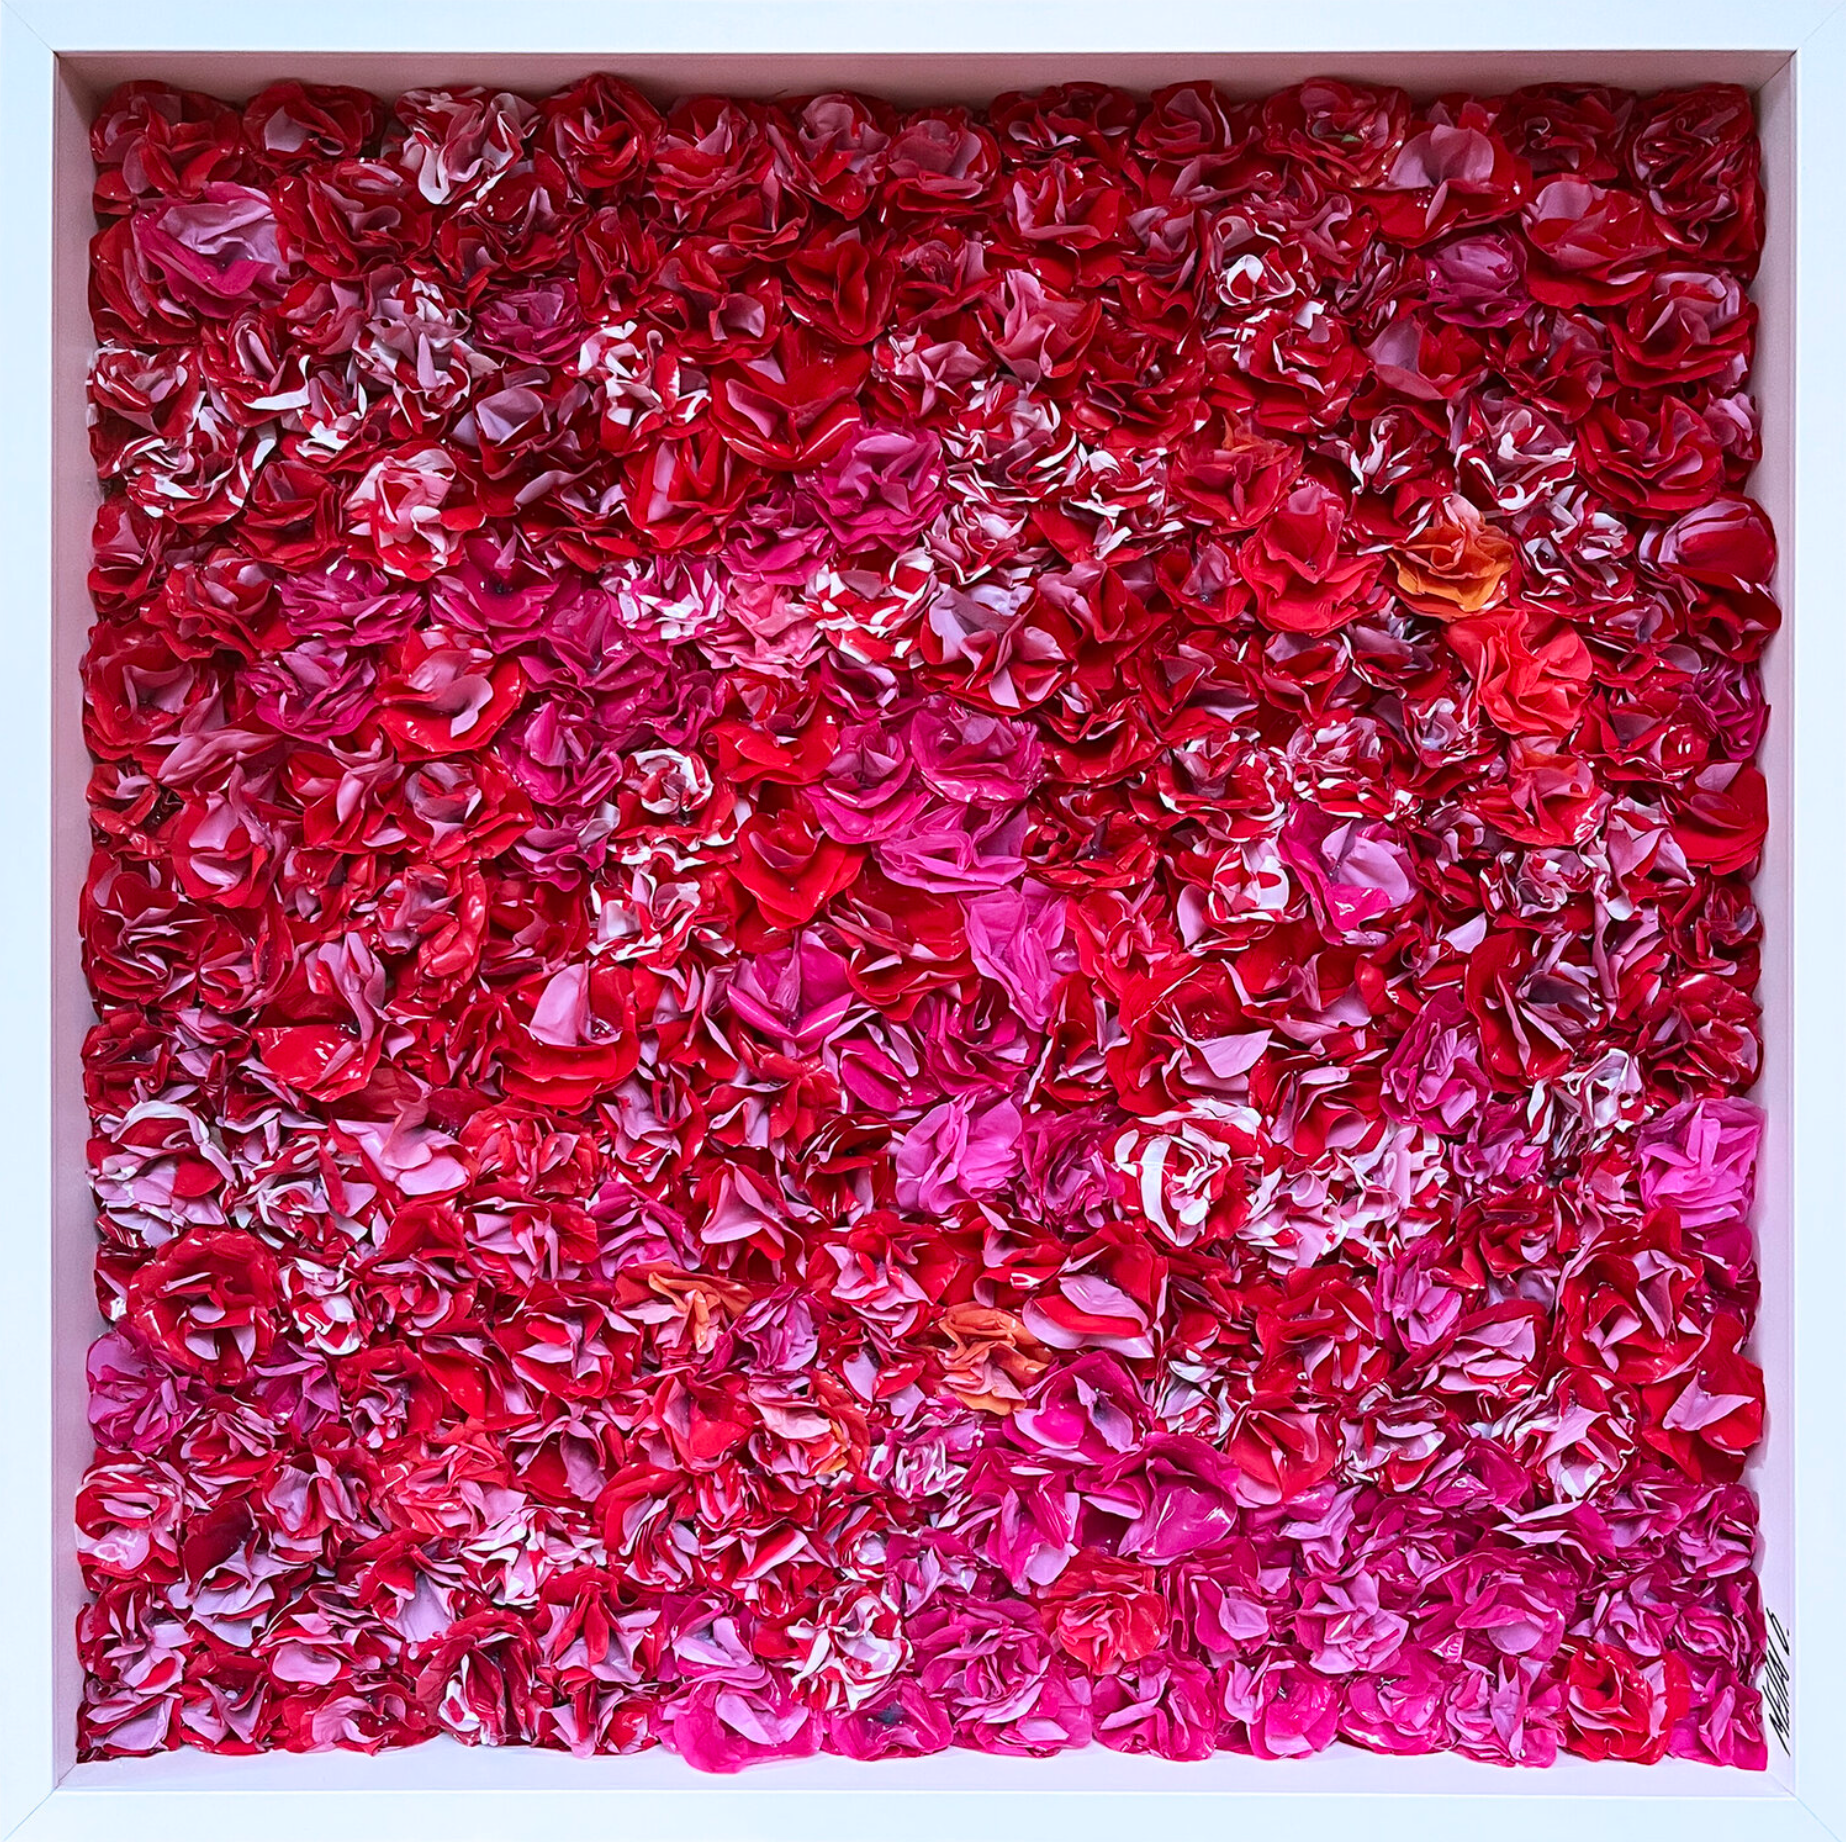 Oliver Messas "Passion..." Collage, peinture abstraite de fleurs rouges.